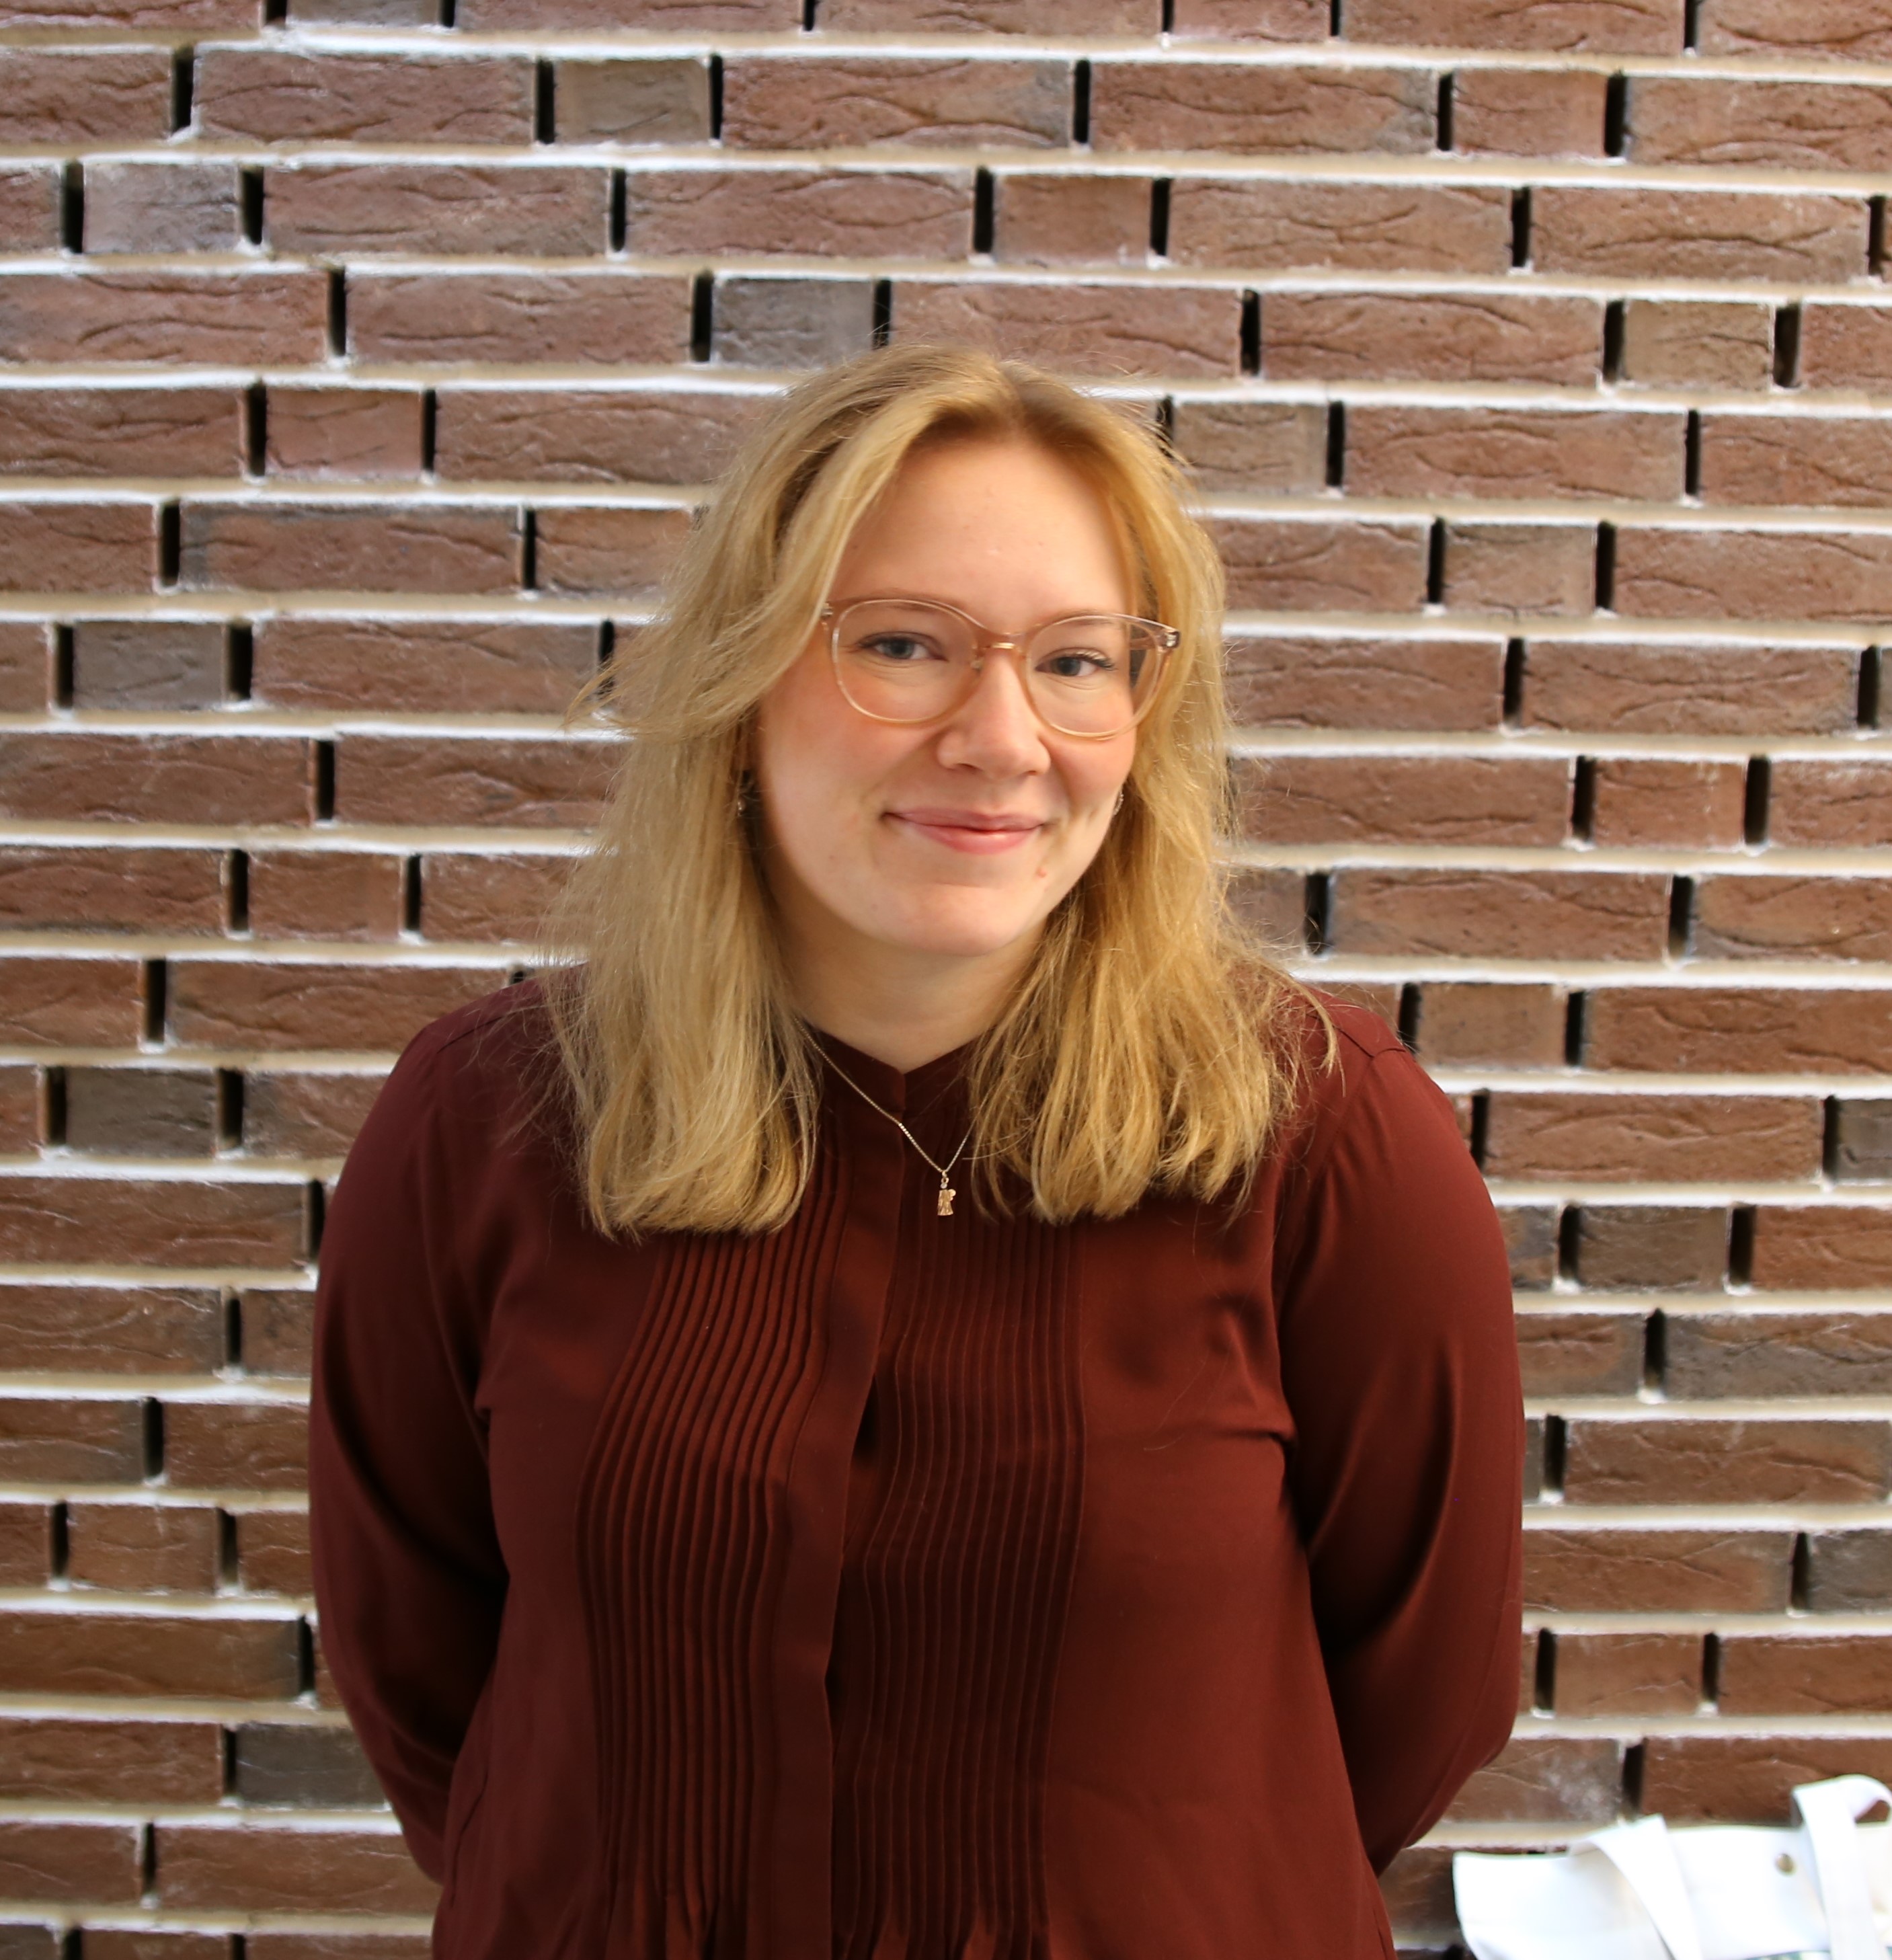 Bilde av Ida Jørgine i profil. Hun har blondt hår, briller og en mørkerød skjorte på seg. I bakgrunnen er en murvegg.